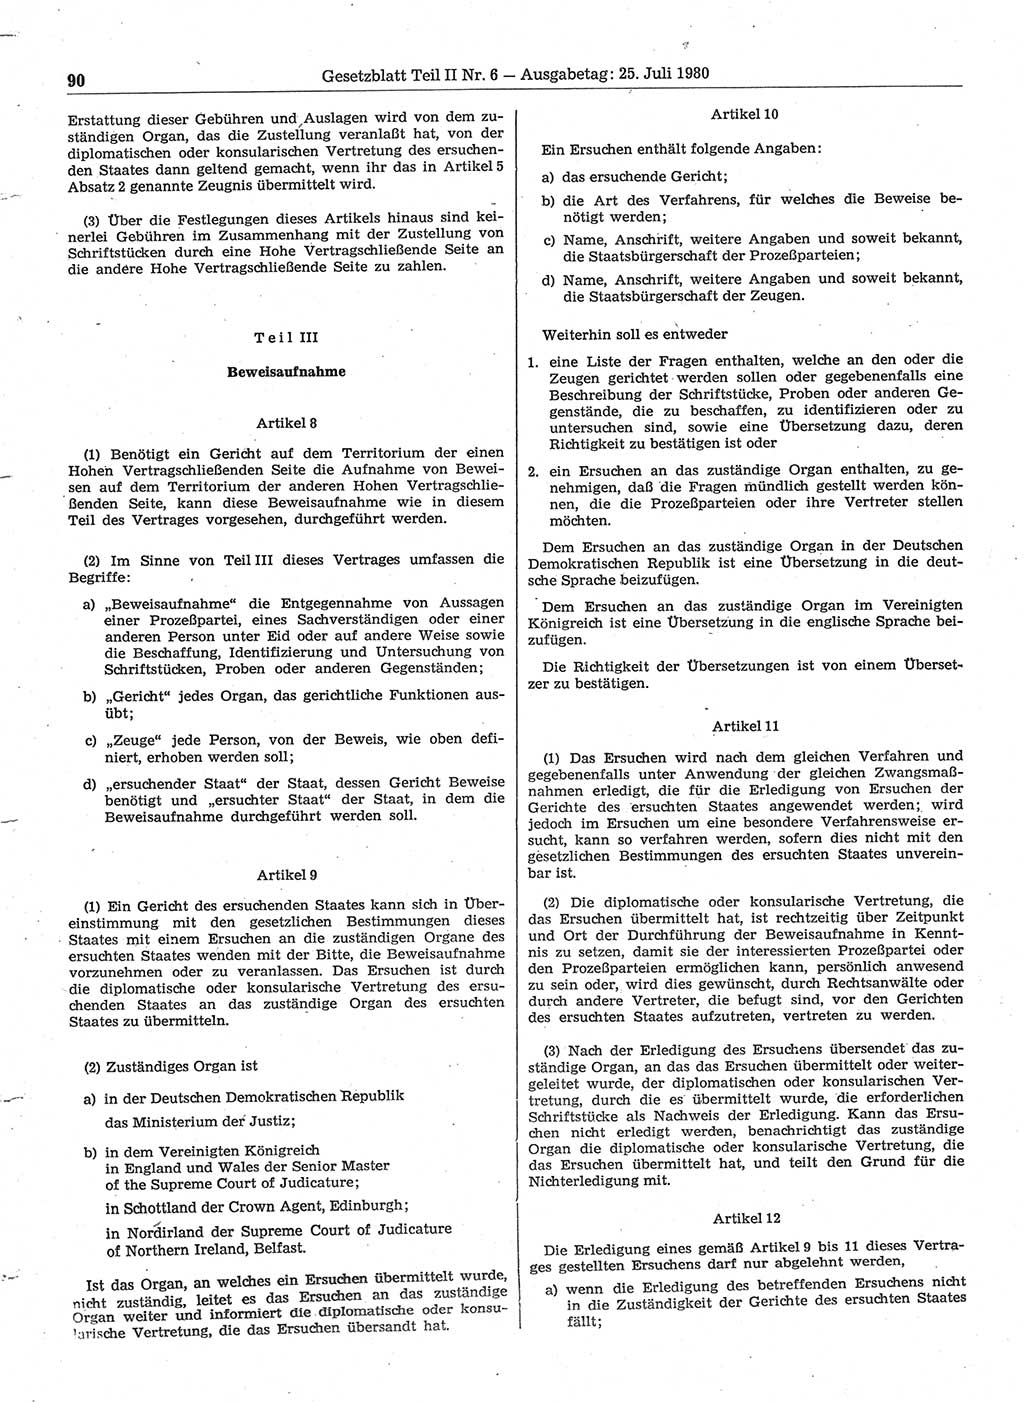 Gesetzblatt (GBl.) der Deutschen Demokratischen Republik (DDR) Teil ⅠⅠ 1980, Seite 90 (GBl. DDR ⅠⅠ 1980, S. 90)